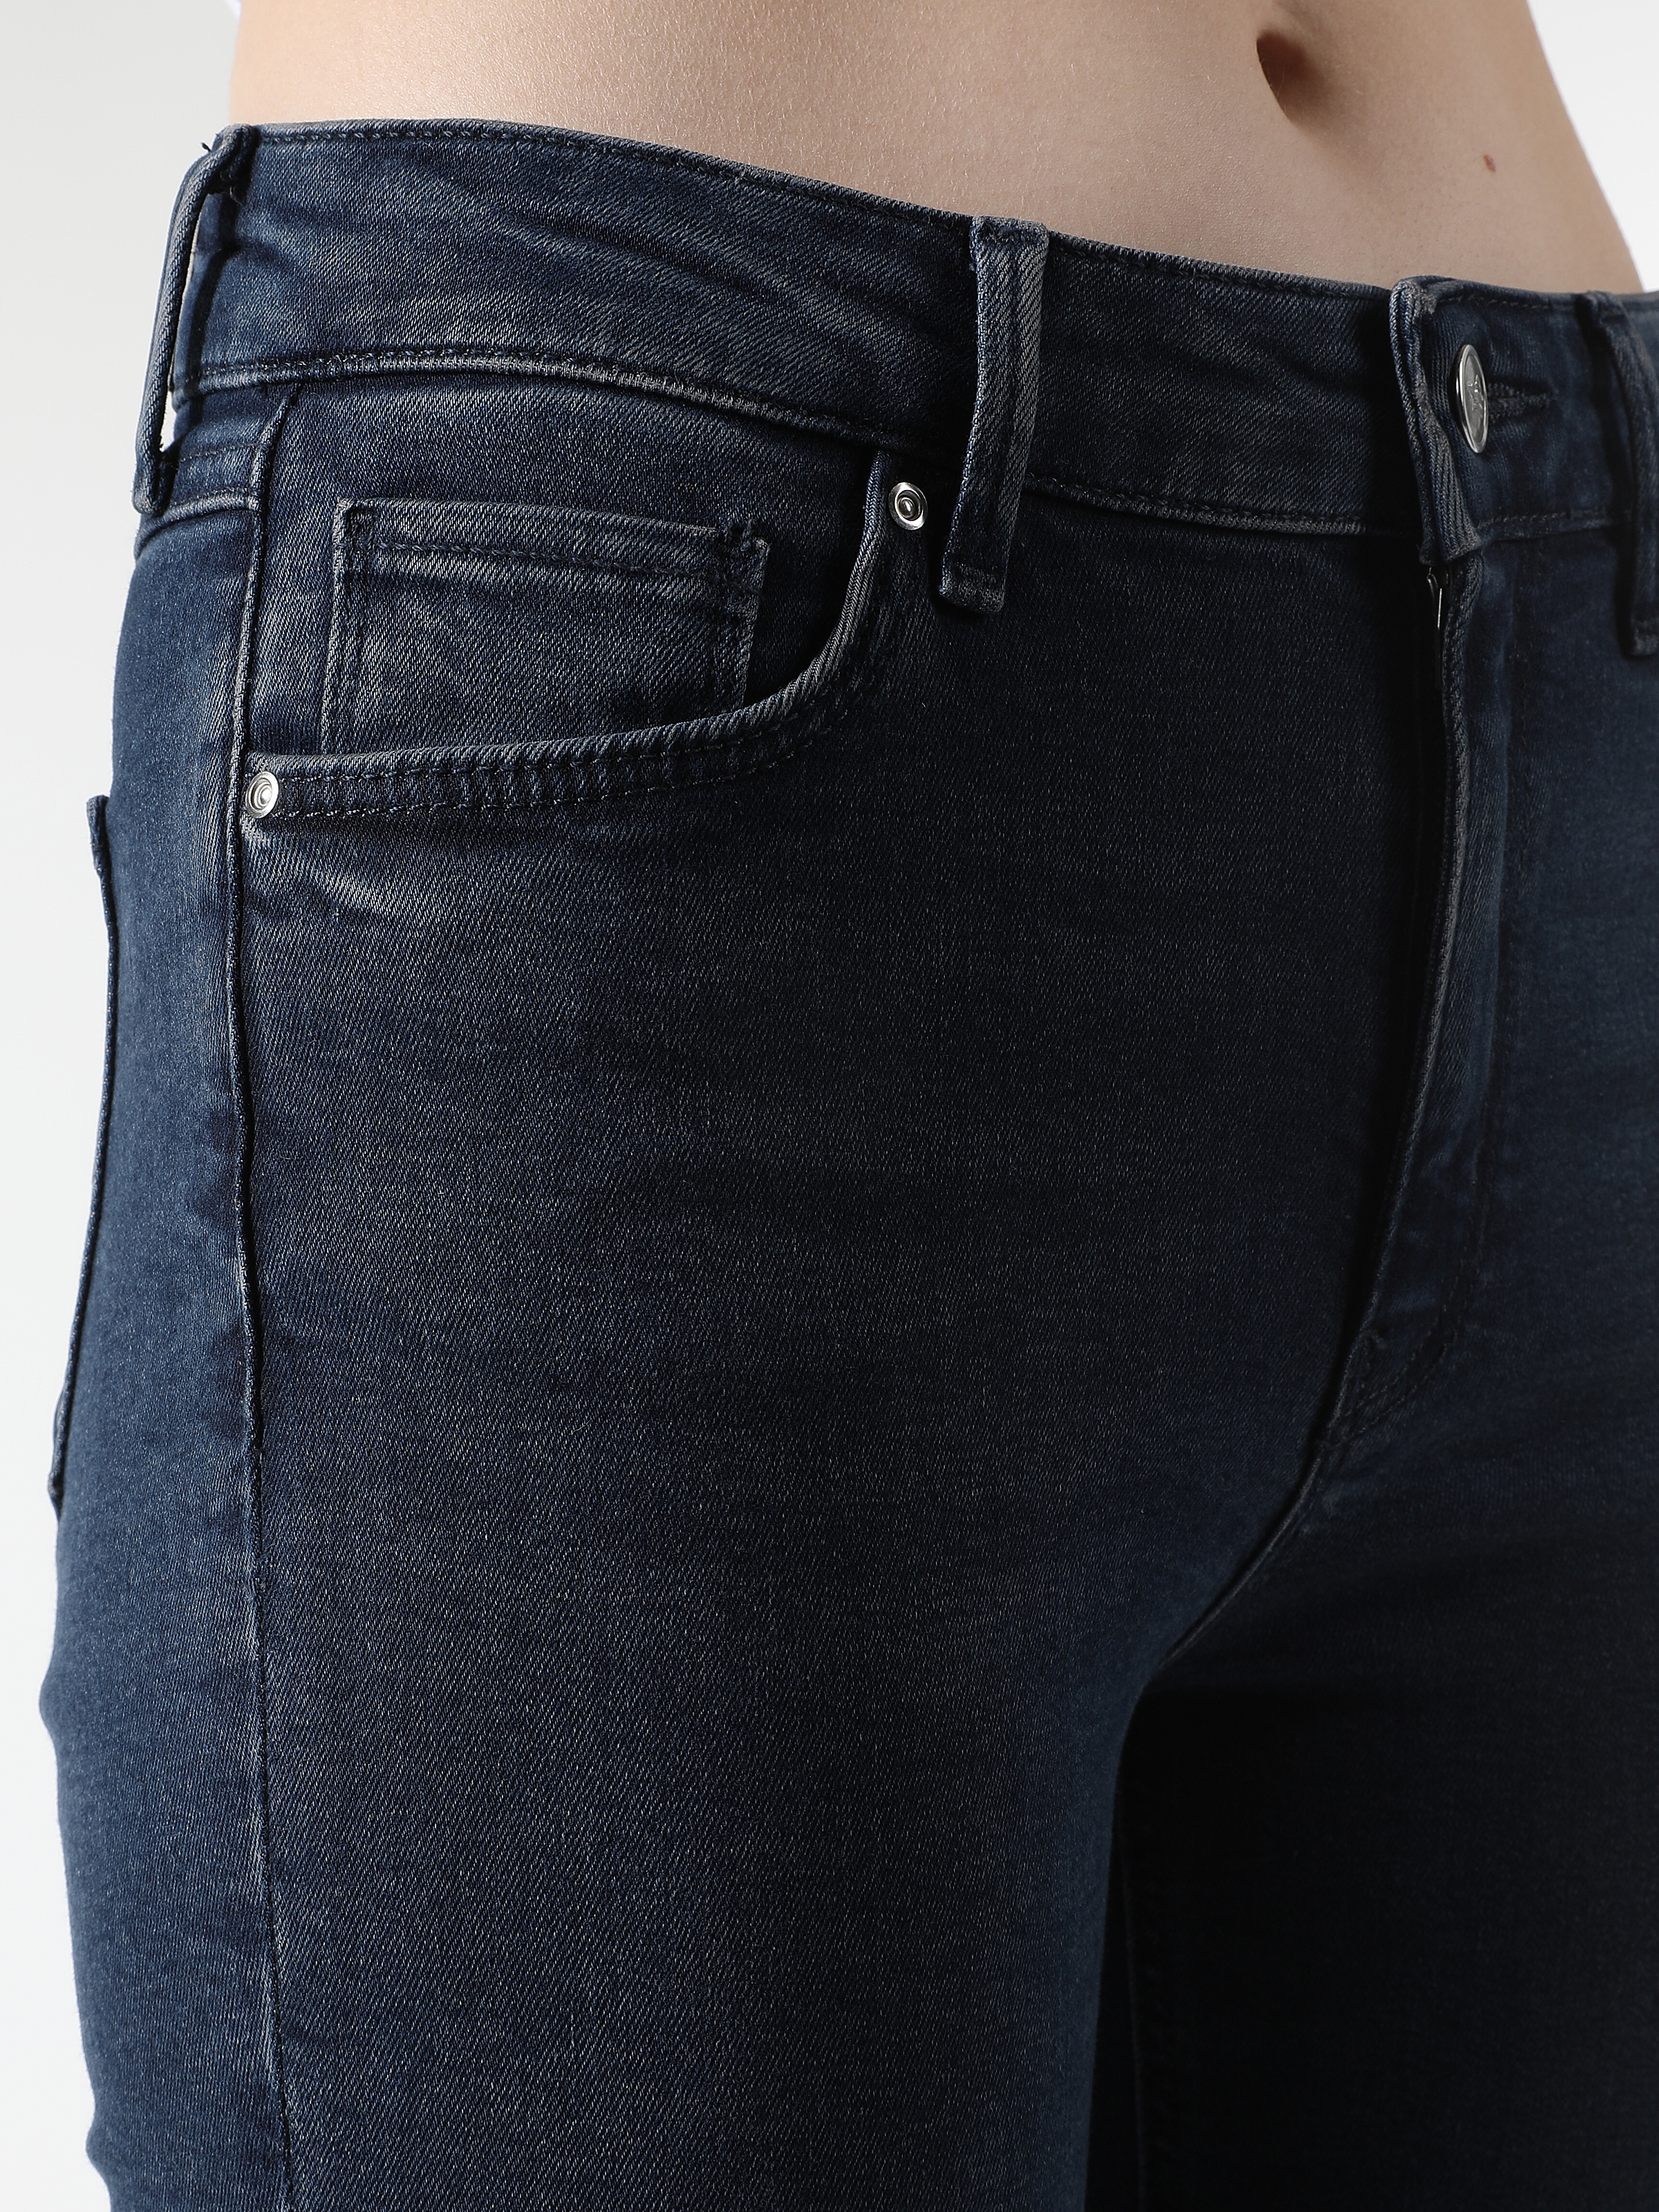 Afișați detalii pentru Pantaloni De Dama Albastru Skinny Fit 759 LARA 